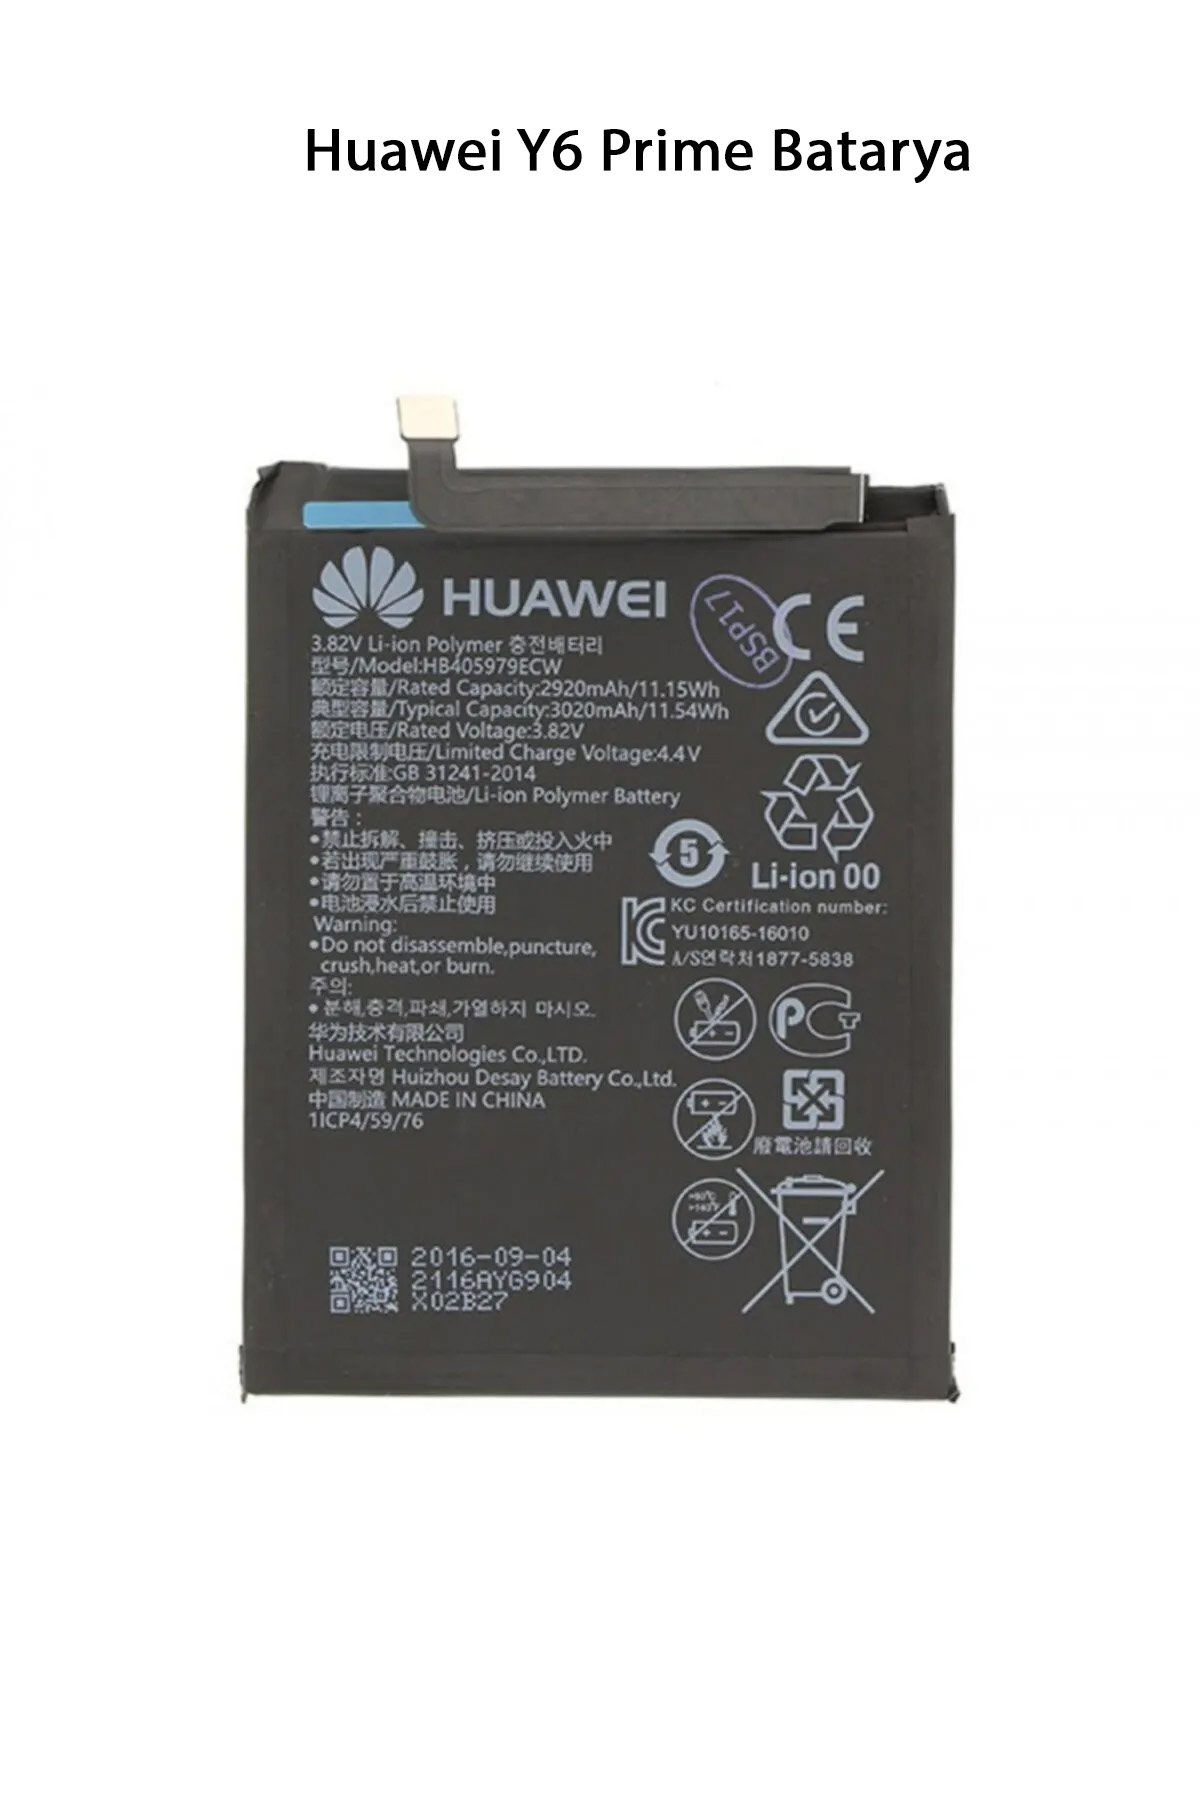 Huawei Y6 Prime Batarya Pil 3020 Mah